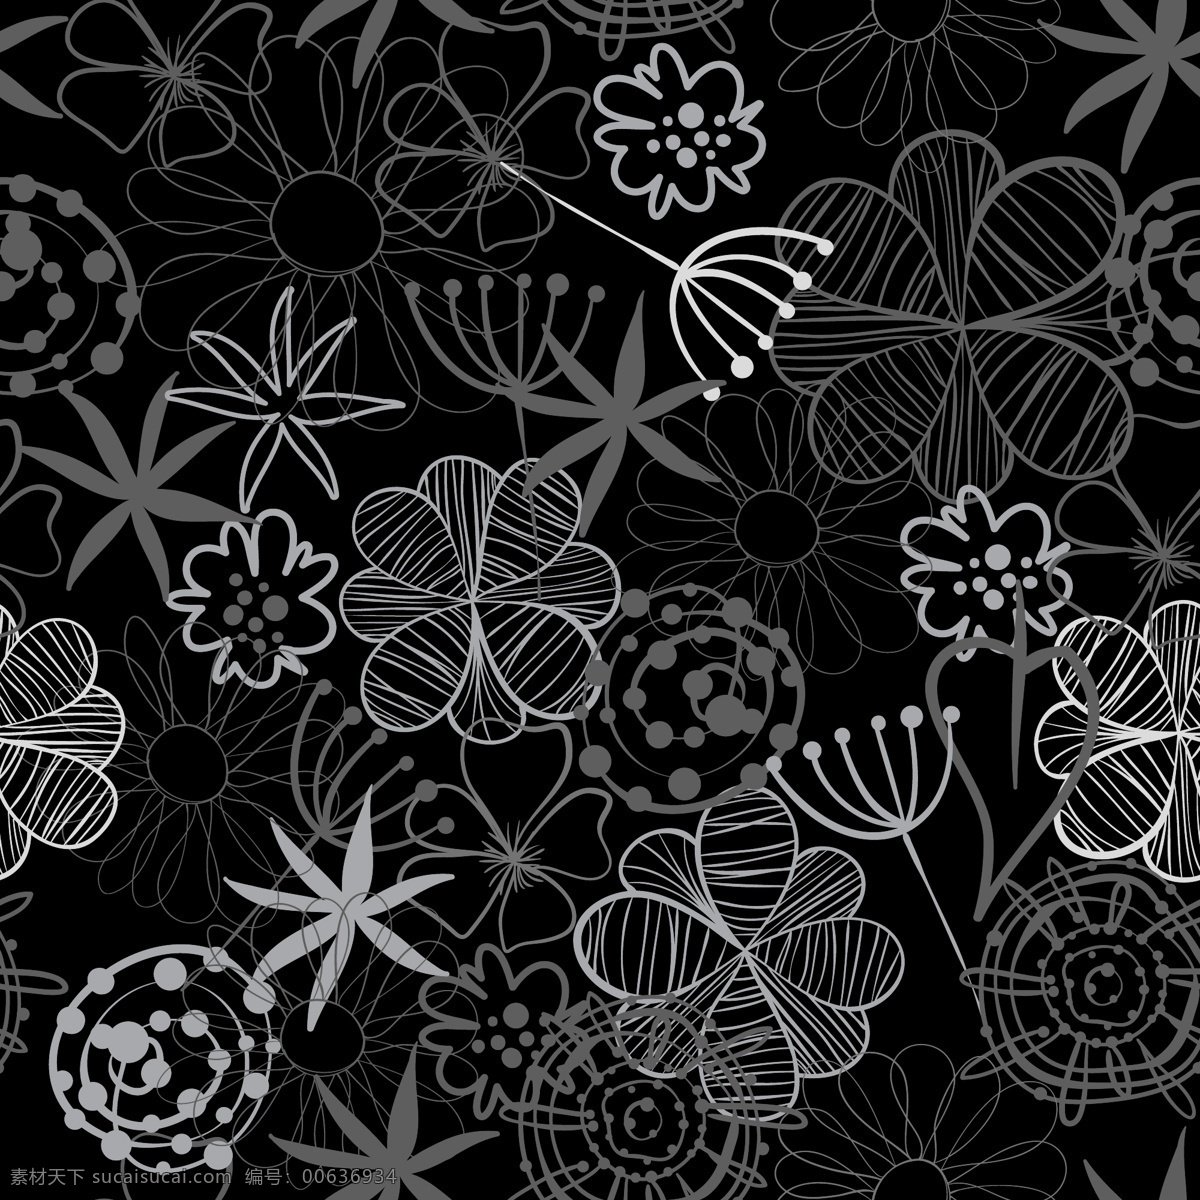 手绘 可爱 花朵 背景 植物 黑白 卡通 底纹